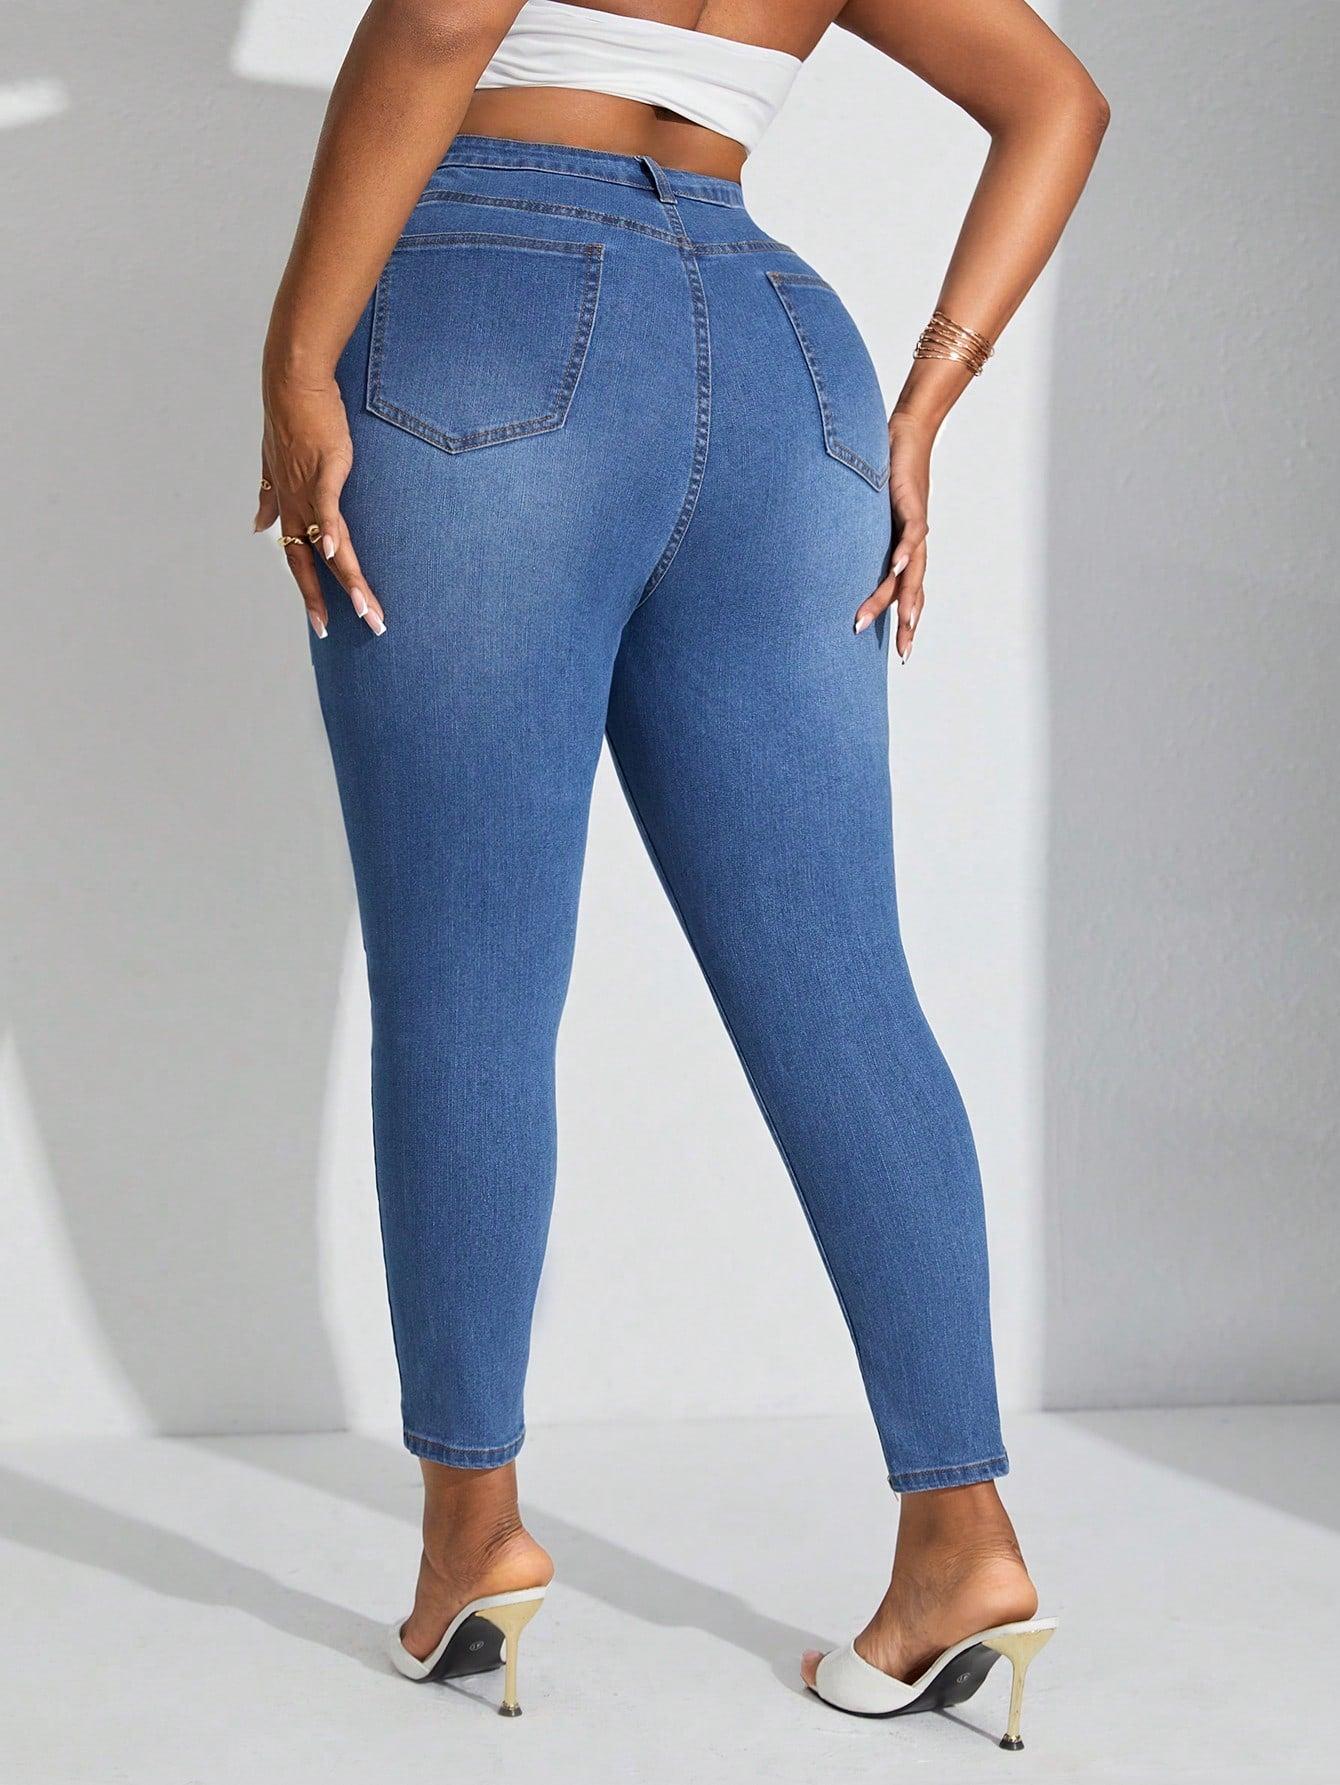 spodnie rurki jeans wysoki stan guziki